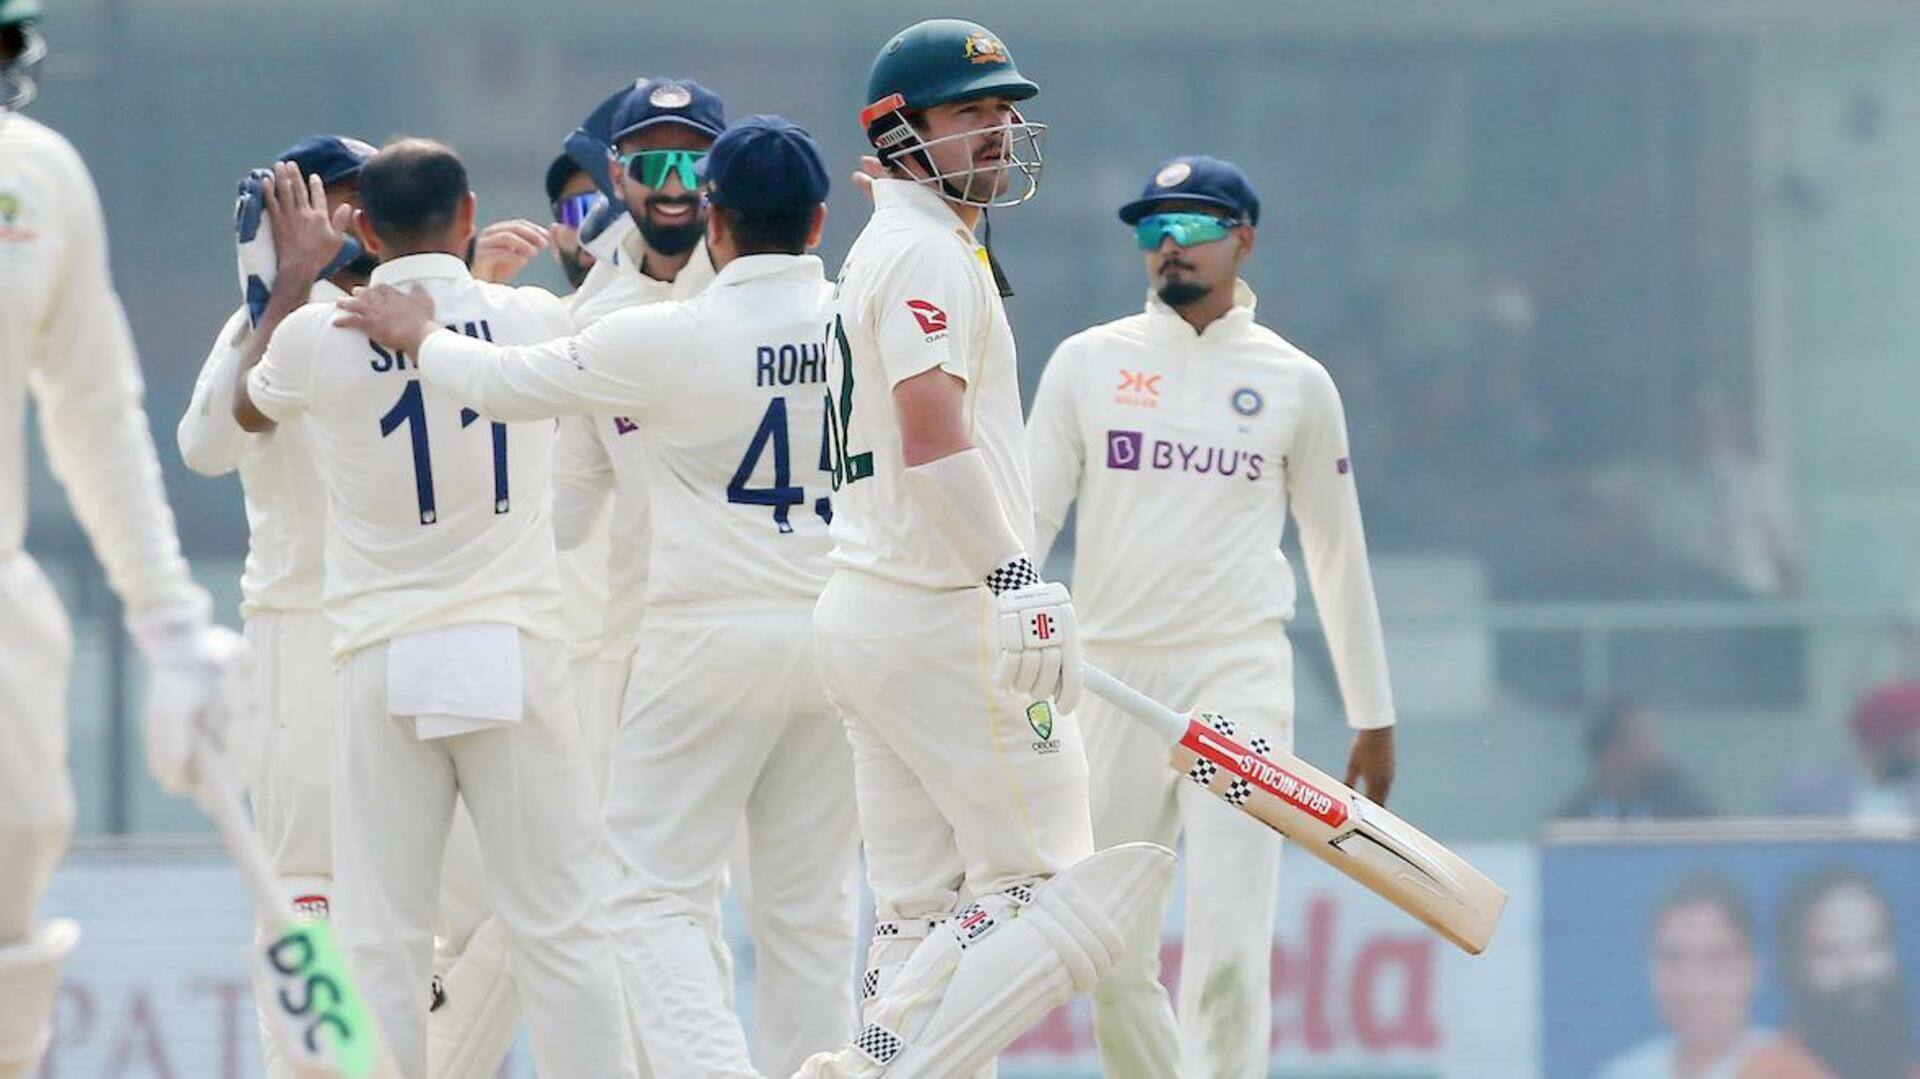 दूसरा टेस्ट: भारतीय गेंदबाजों के नाम रहा पहला दिन, अश्विन-जडेजा और शमी की शानदार गेंदबाजी